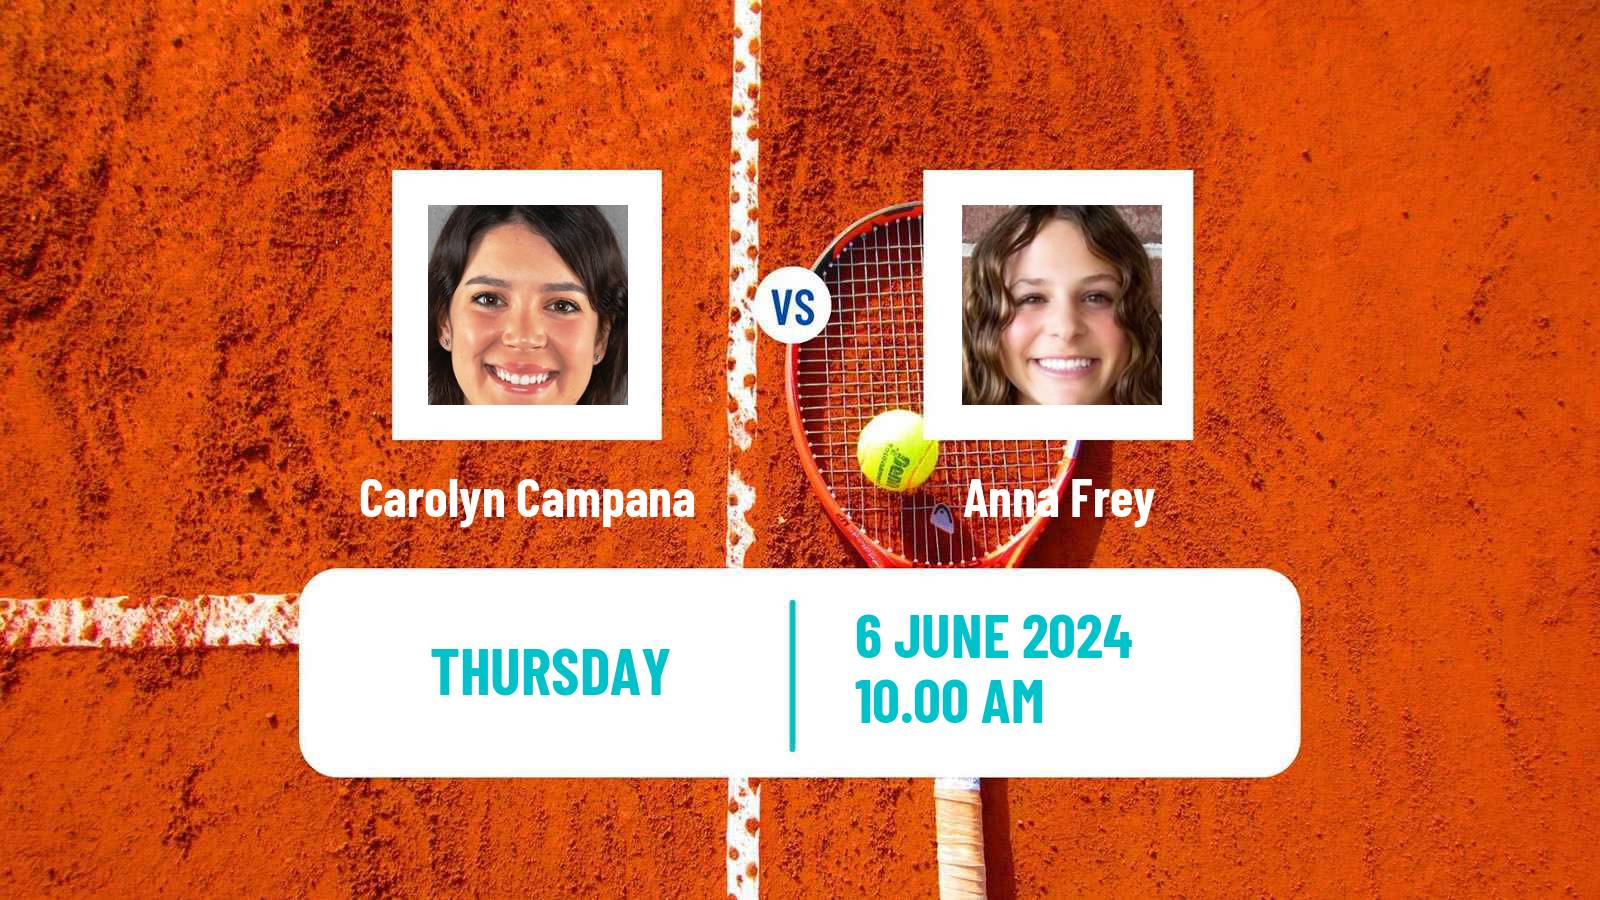 Tennis ITF W15 San Diego Ca 2 Women Carolyn Campana - Anna Frey